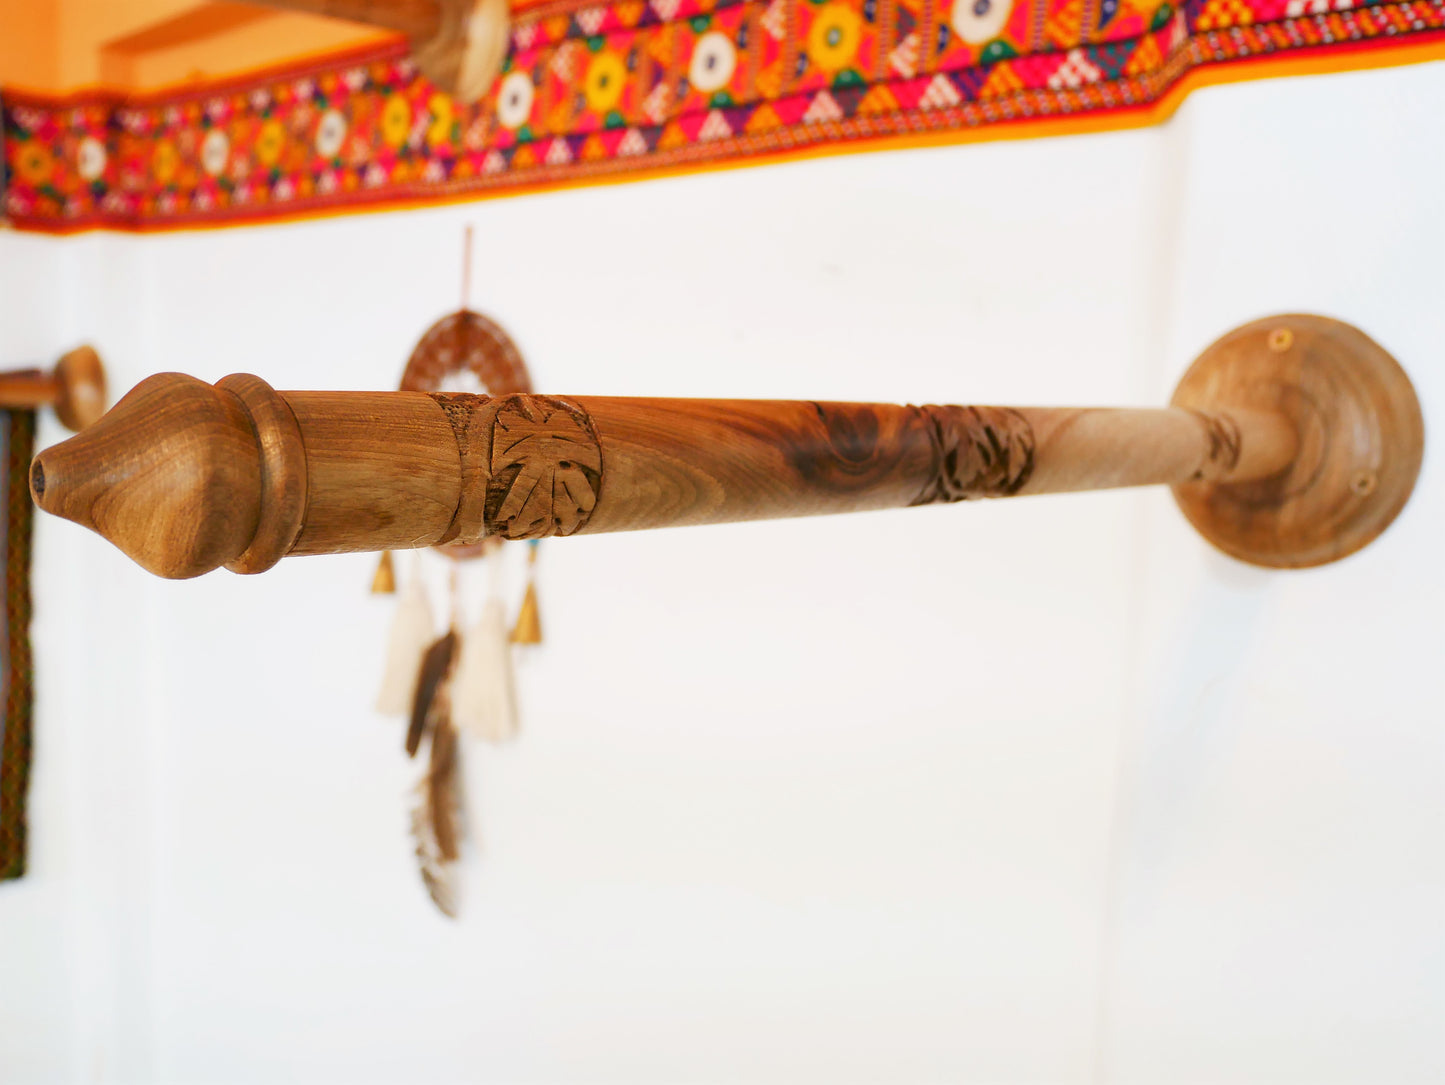 Saree-Baldachinrahmen mit handgefertigten Walnussholzstäben | Boho Betthimmel